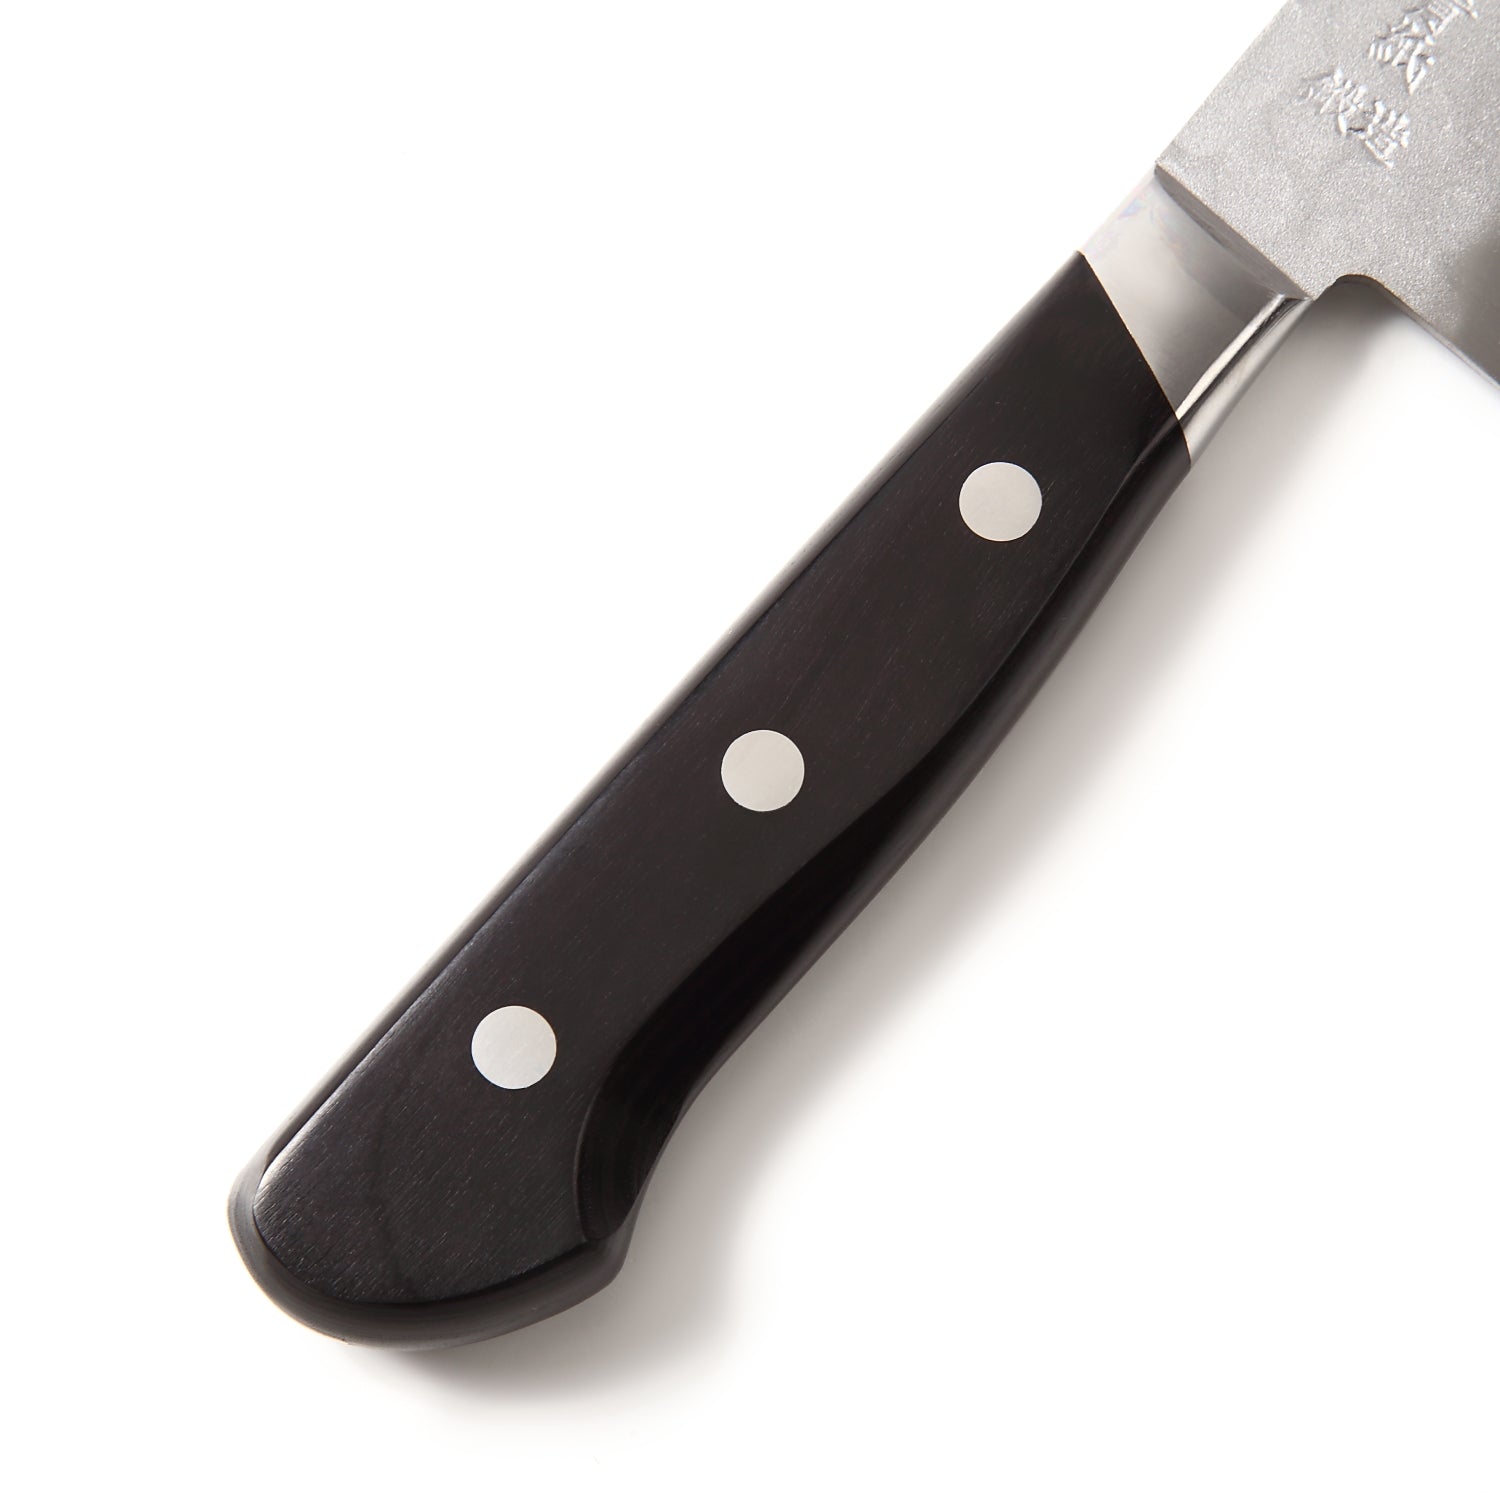 Syosaku Japanese Multi Purpose Best Sharp Kitchen Chef Knife Aoko(Blue Steel)-No.2 Black Pakkawood Handle, Santoku 7-inch (180mm) - Syosaku-Japan